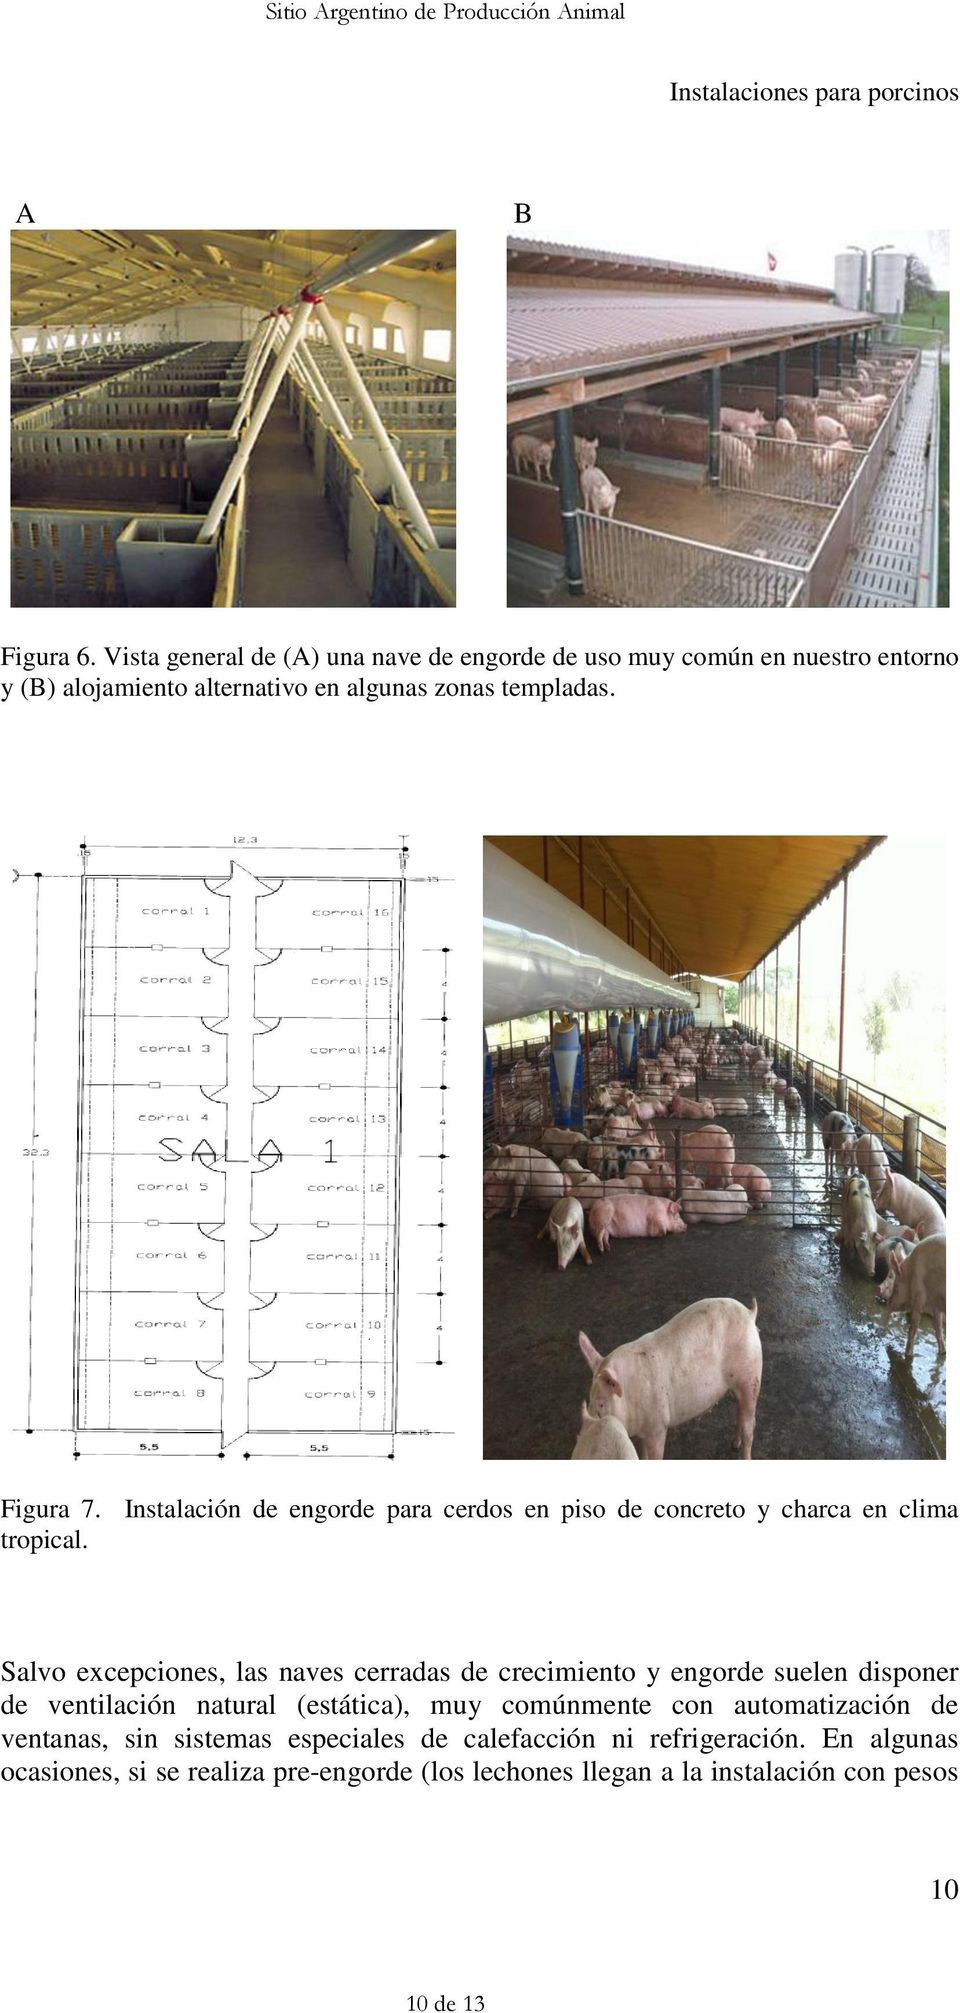 Figura 7. Instalación de engorde para cerdos en piso de concreto y charca en clima tropical.